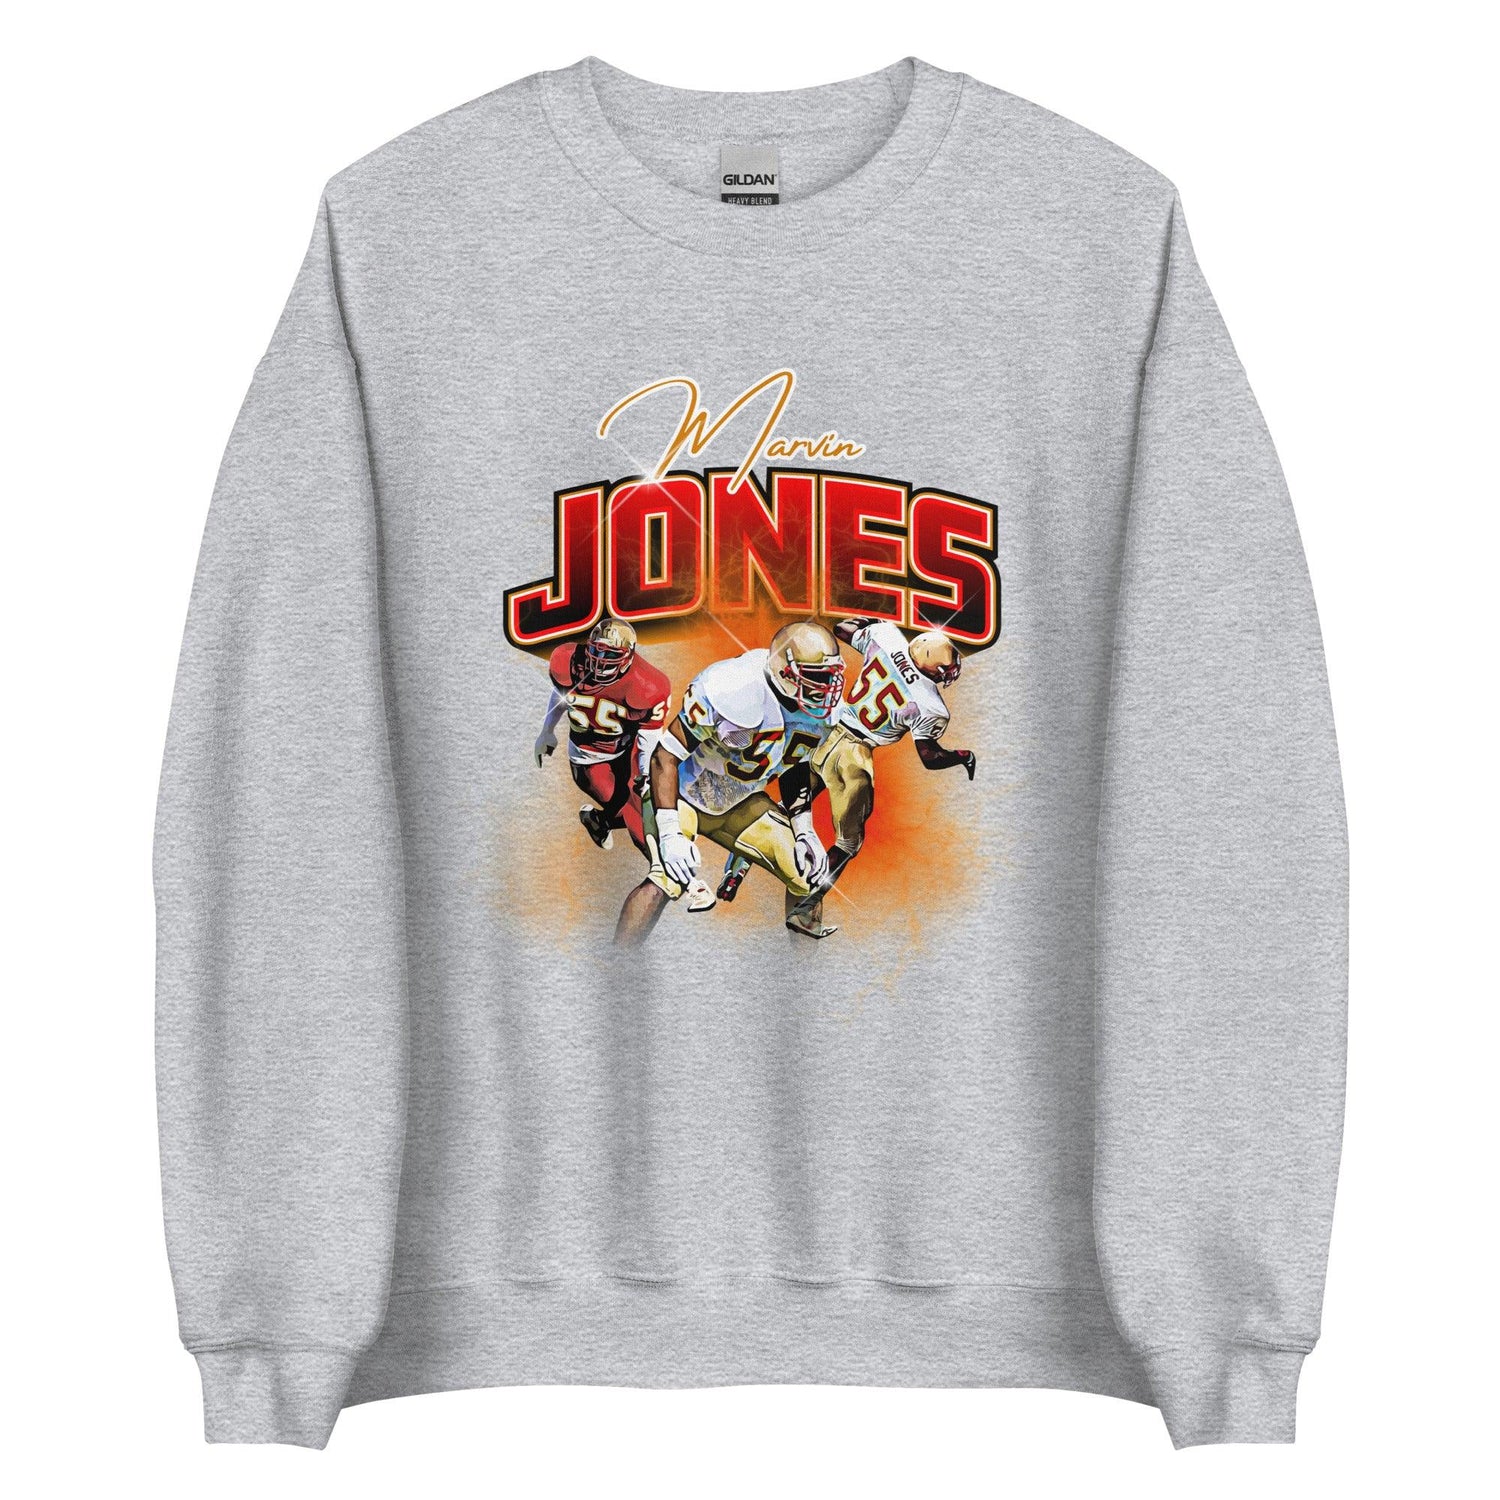 Marvin Jones "Vintage" Sweatshirt - Fan Arch